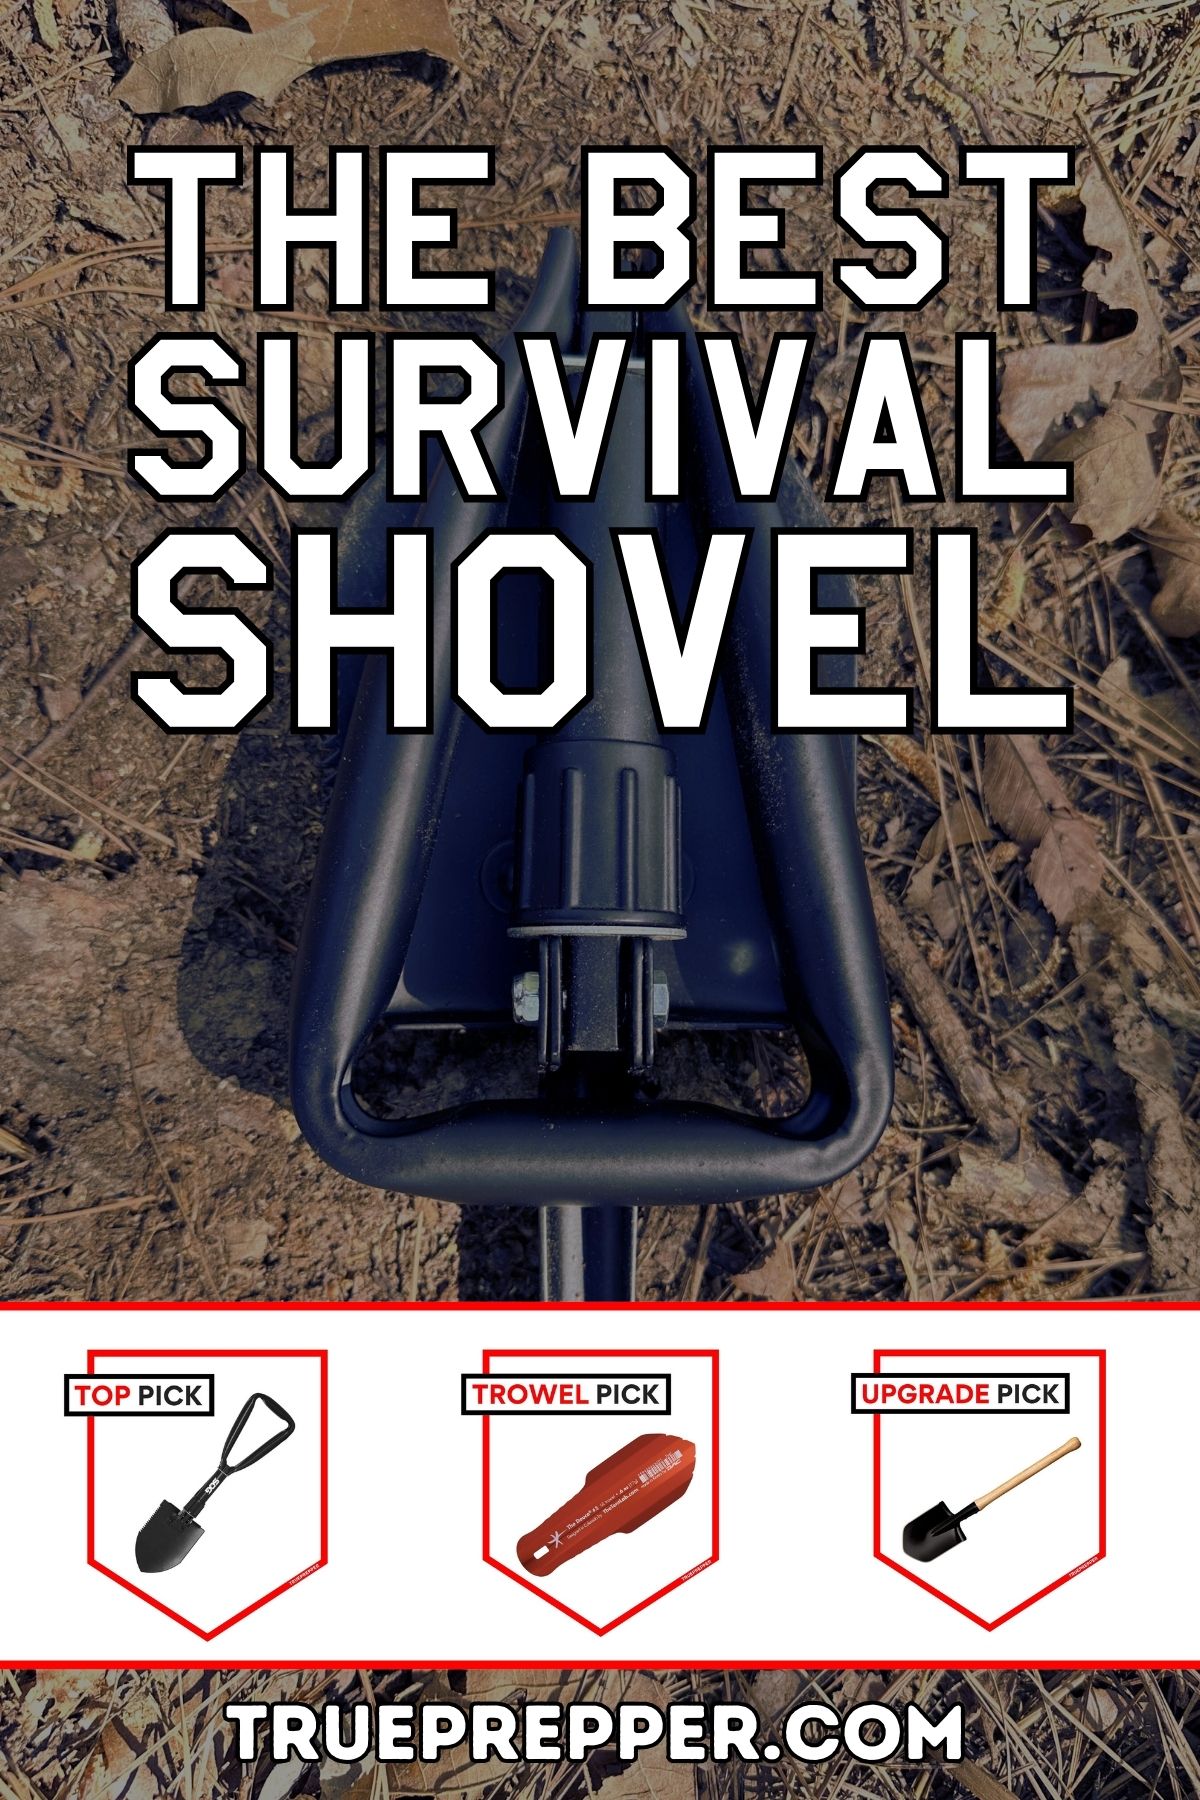 The Best Survival Shovel